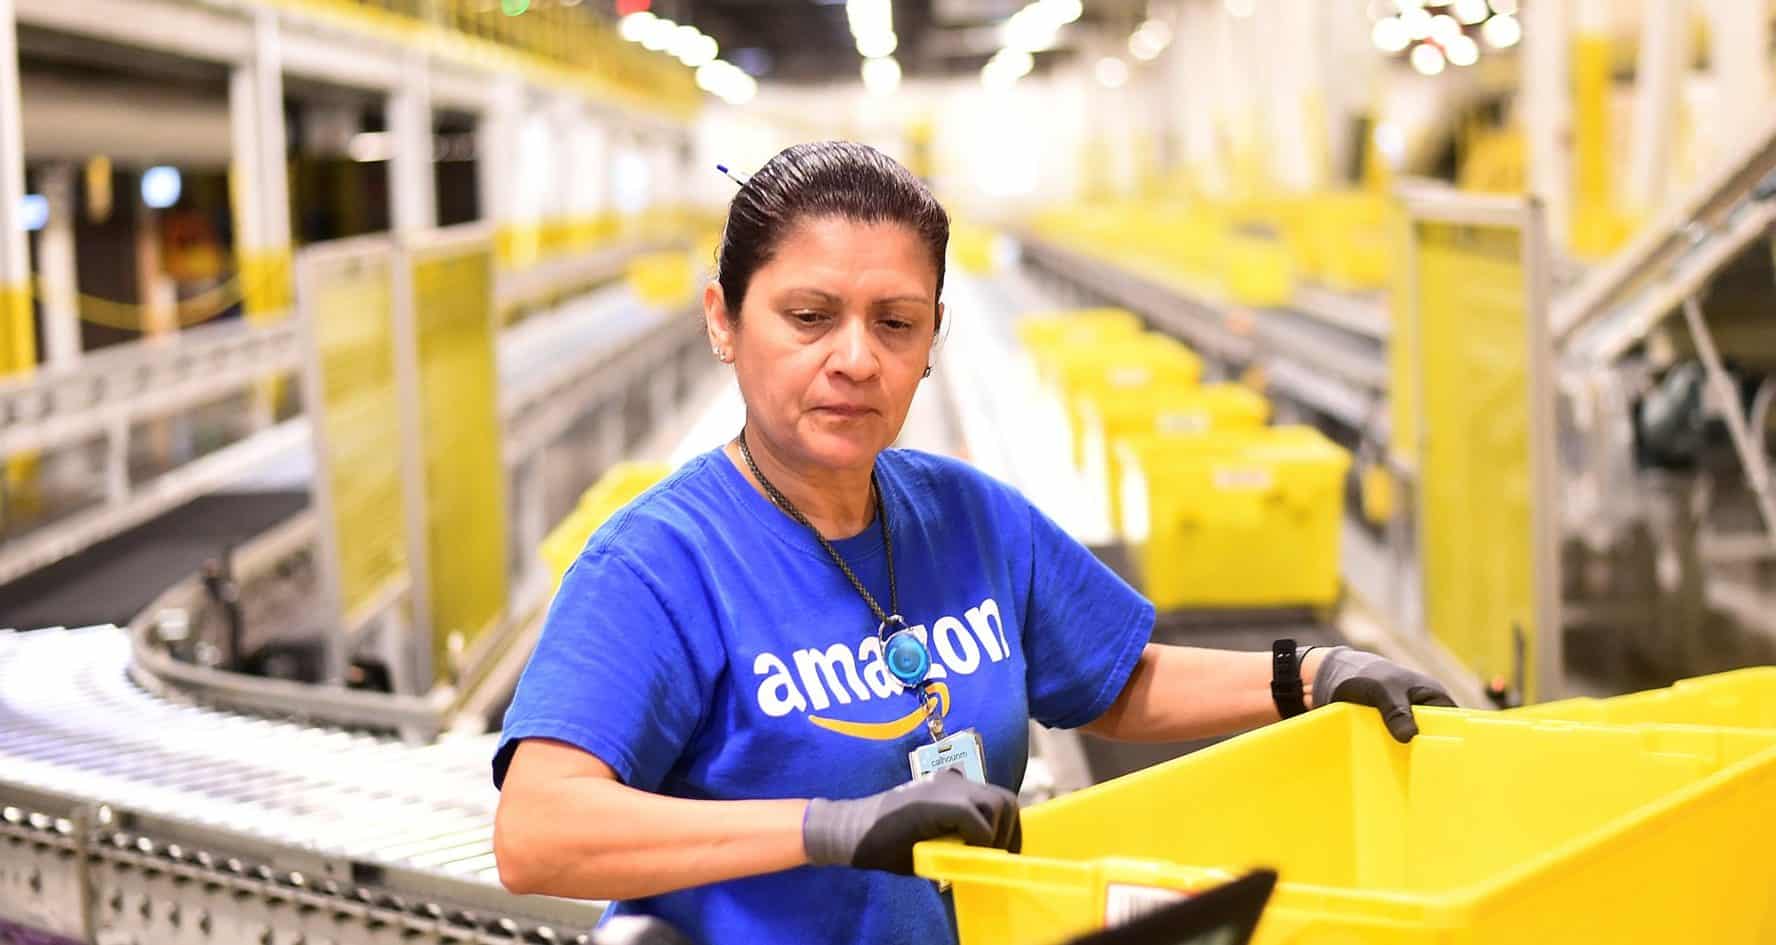 Des employés d'Amazon protestent contre leurs conditions de travail.